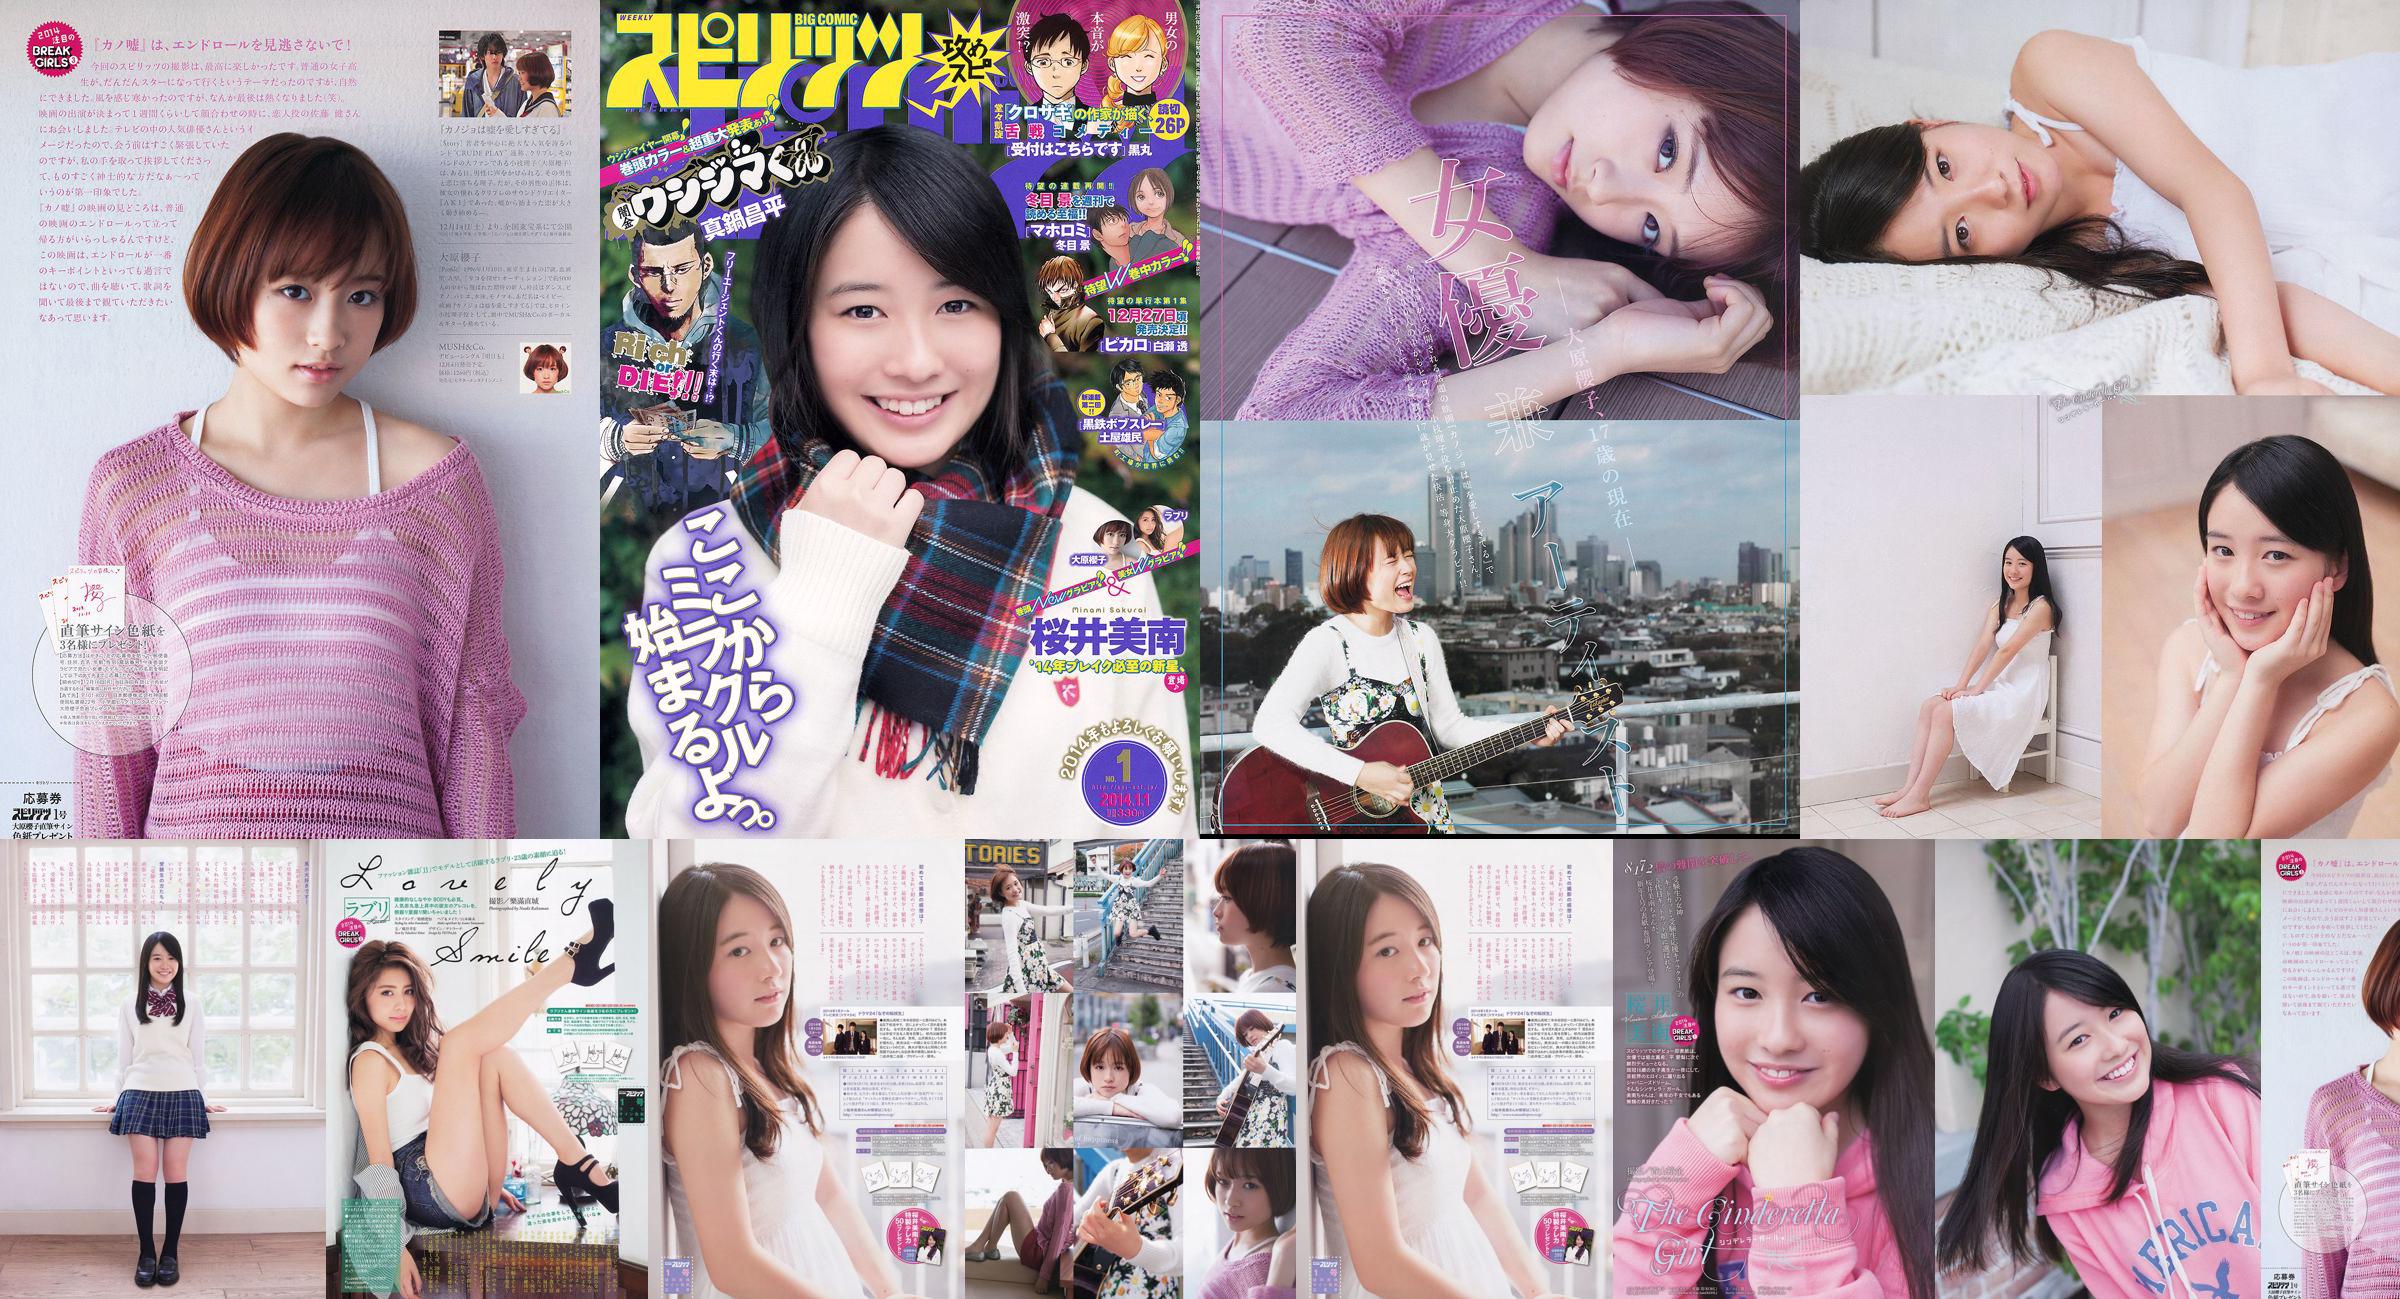 [Wöchentliche große Comic-Geister] Sakurai Minan Ohara Sakurako 2014 No.01 Photo Magazine No.cafa39 Seite 1